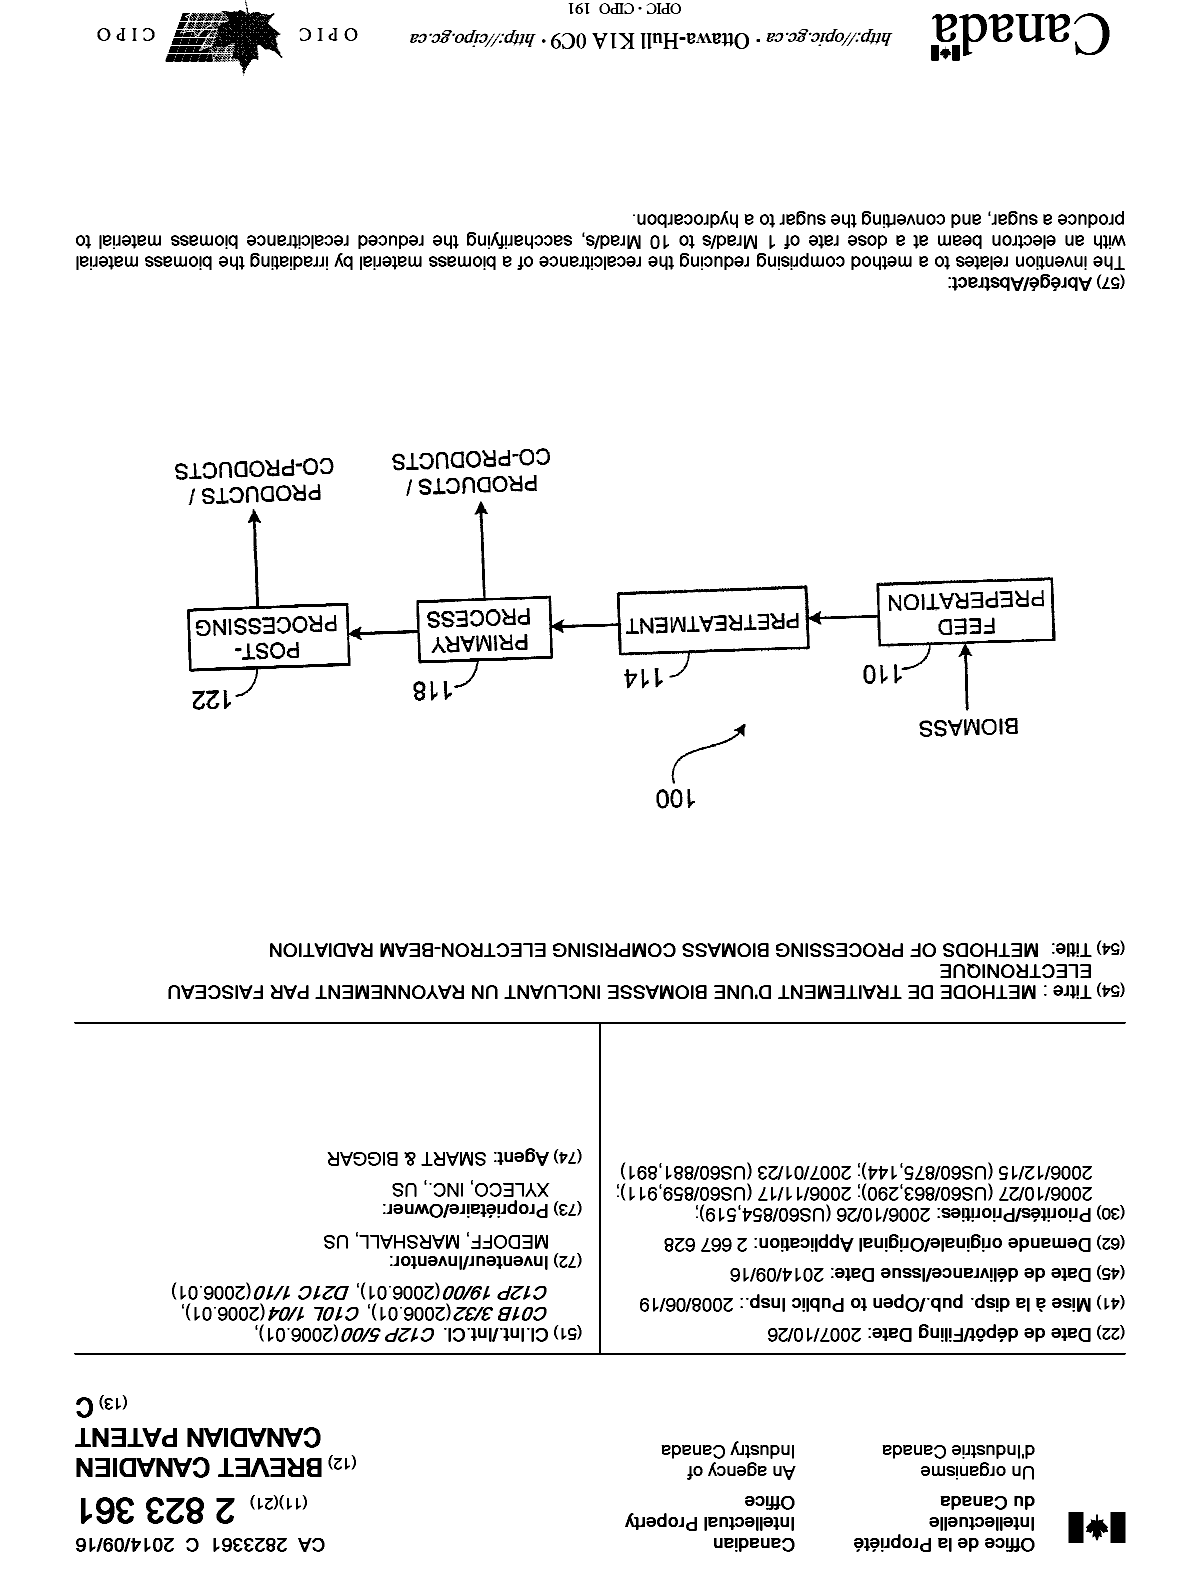 Document de brevet canadien 2823361. Page couverture 20131225. Image 1 de 1